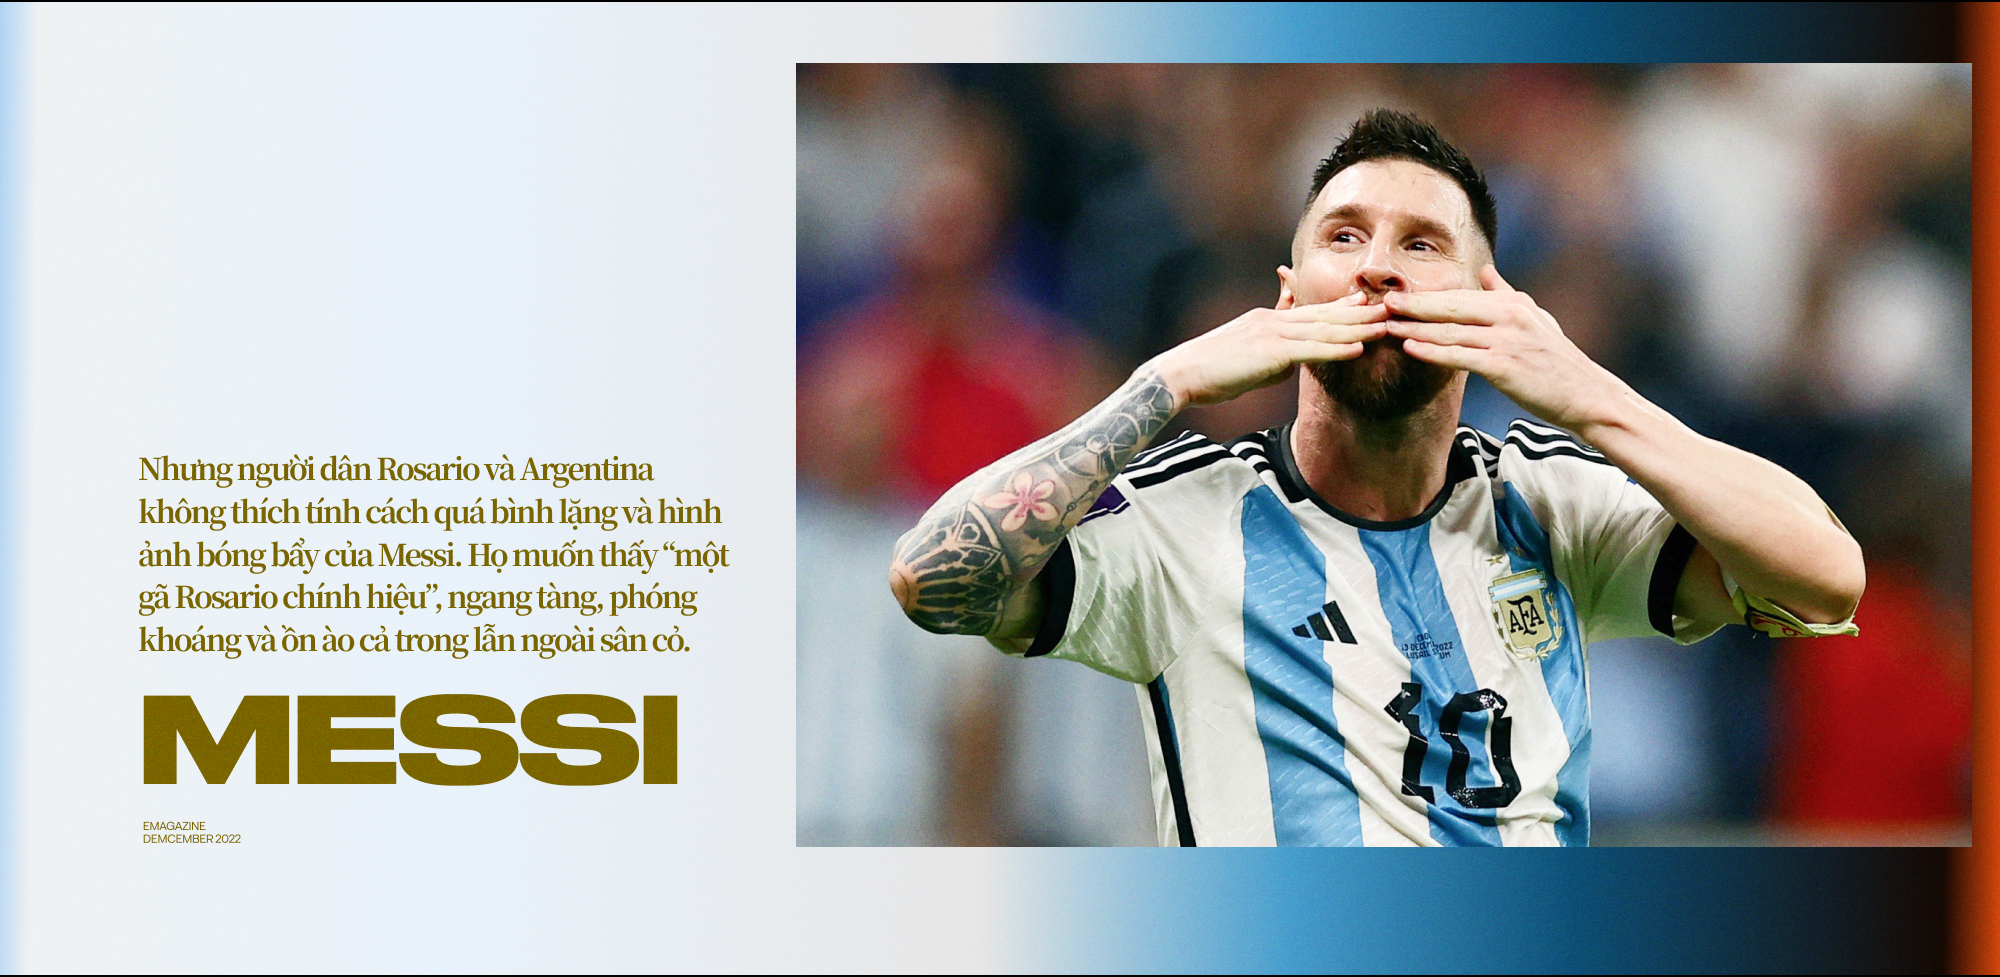 Messi: Từ đứa con thất lạc trở thành người hùng Argentina và cầu thủ vĩ đại nhất của thế hệ này! - Ảnh 2.